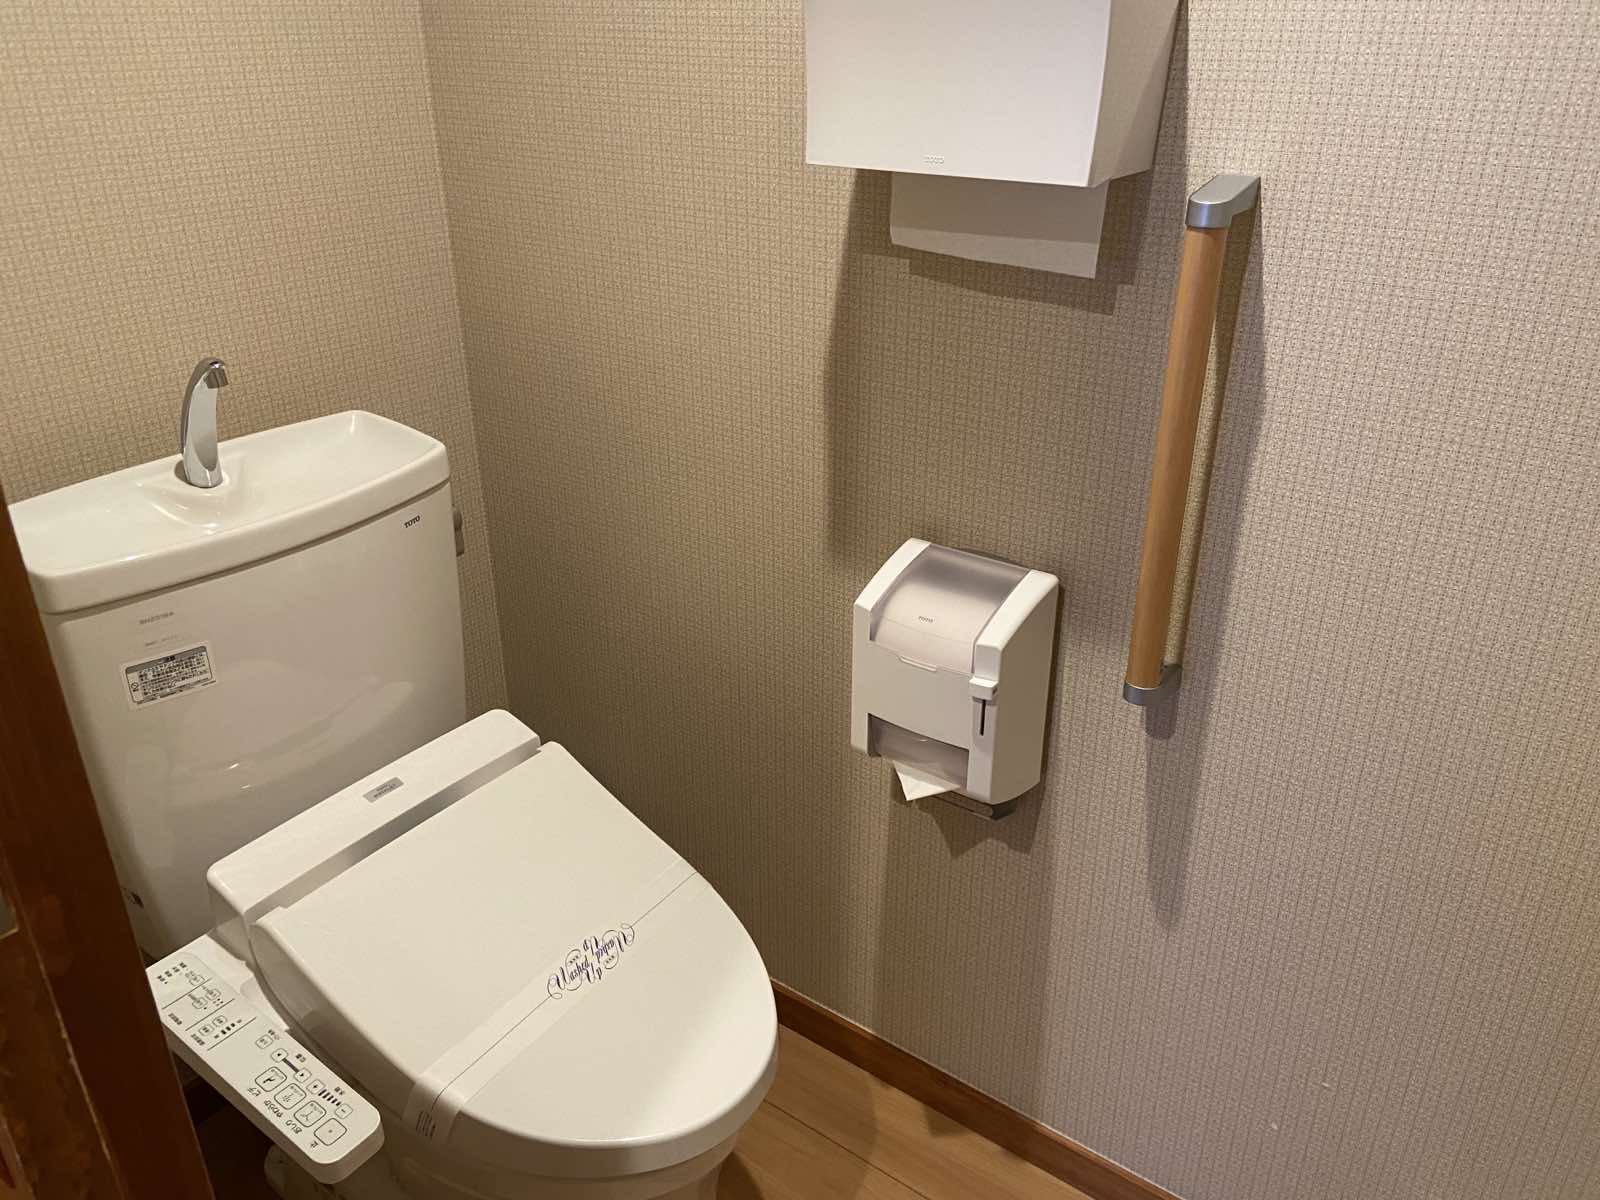 依山楼岩崎さんのトイレ